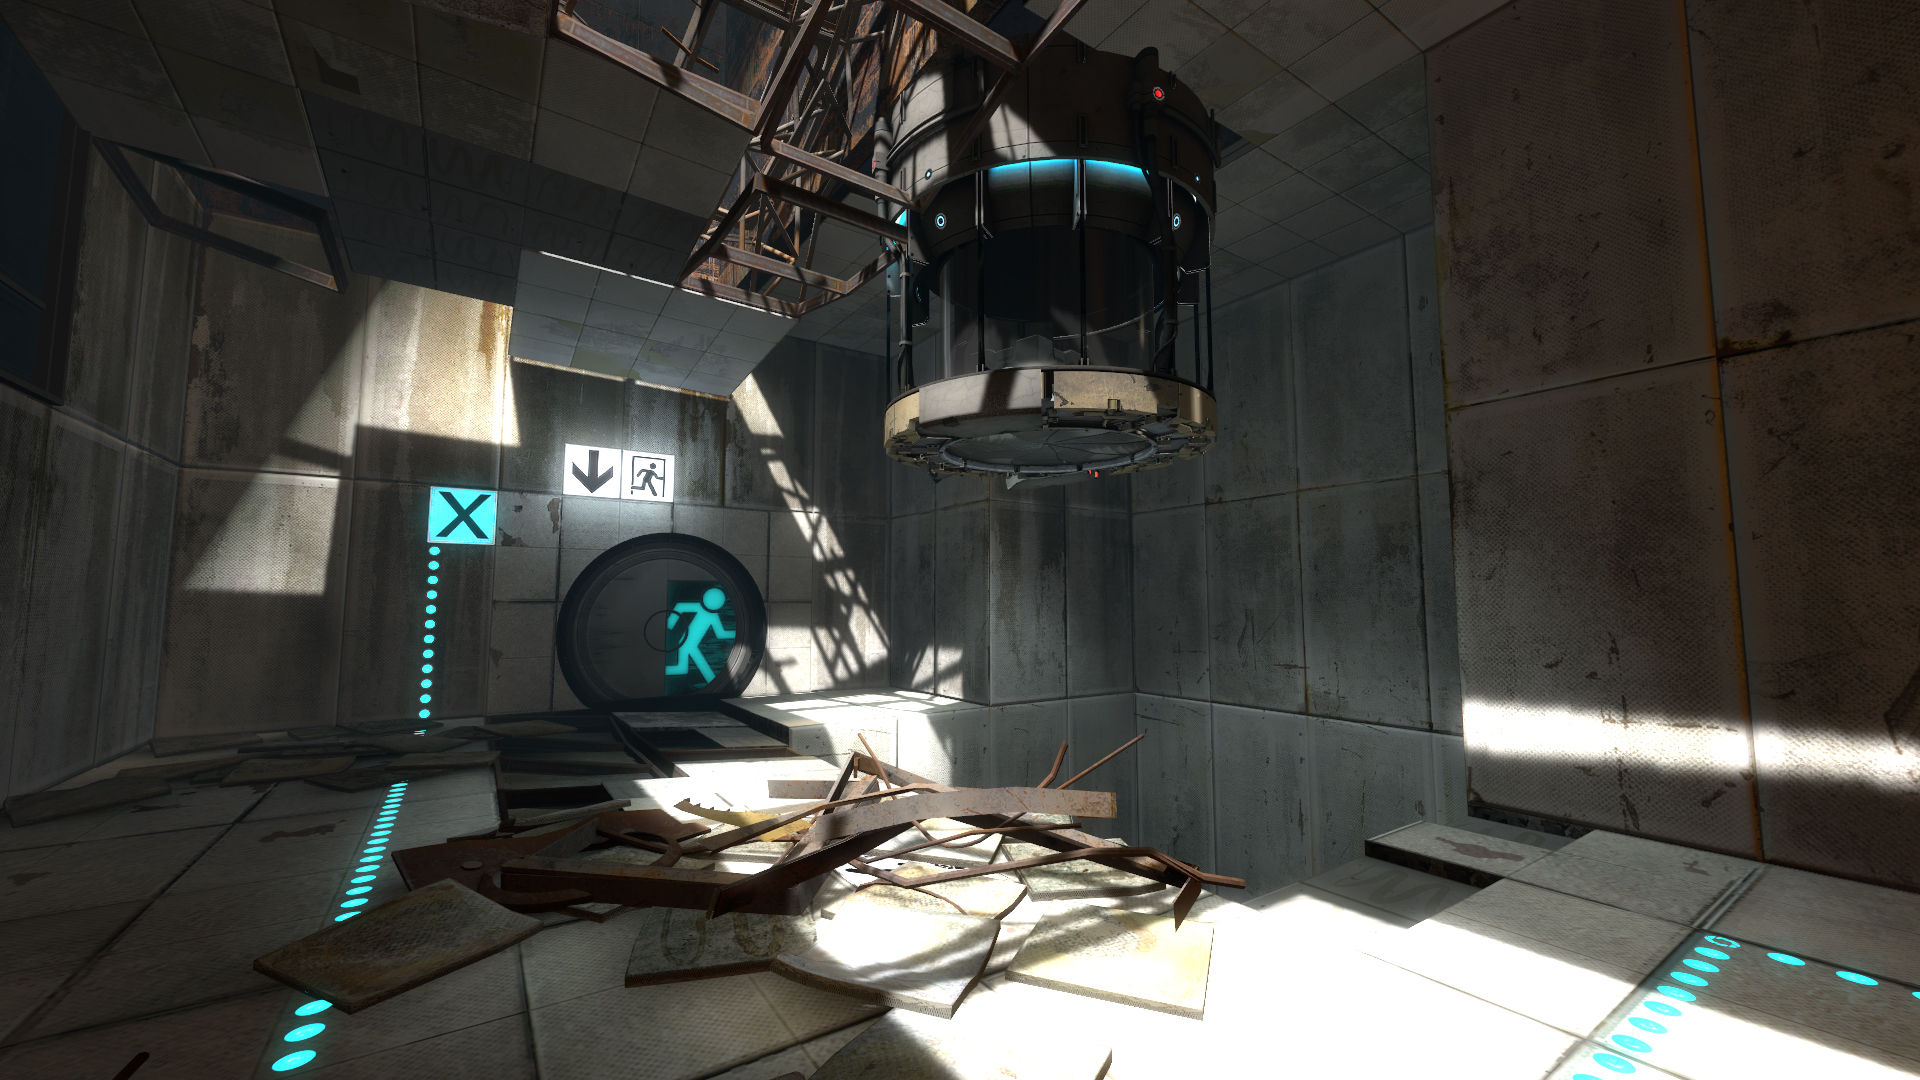 G1 - Conteúdo extra de 'Portal 2' para PC e Mac permitirá a criação de fases  - notícias em Tecnologia e Games